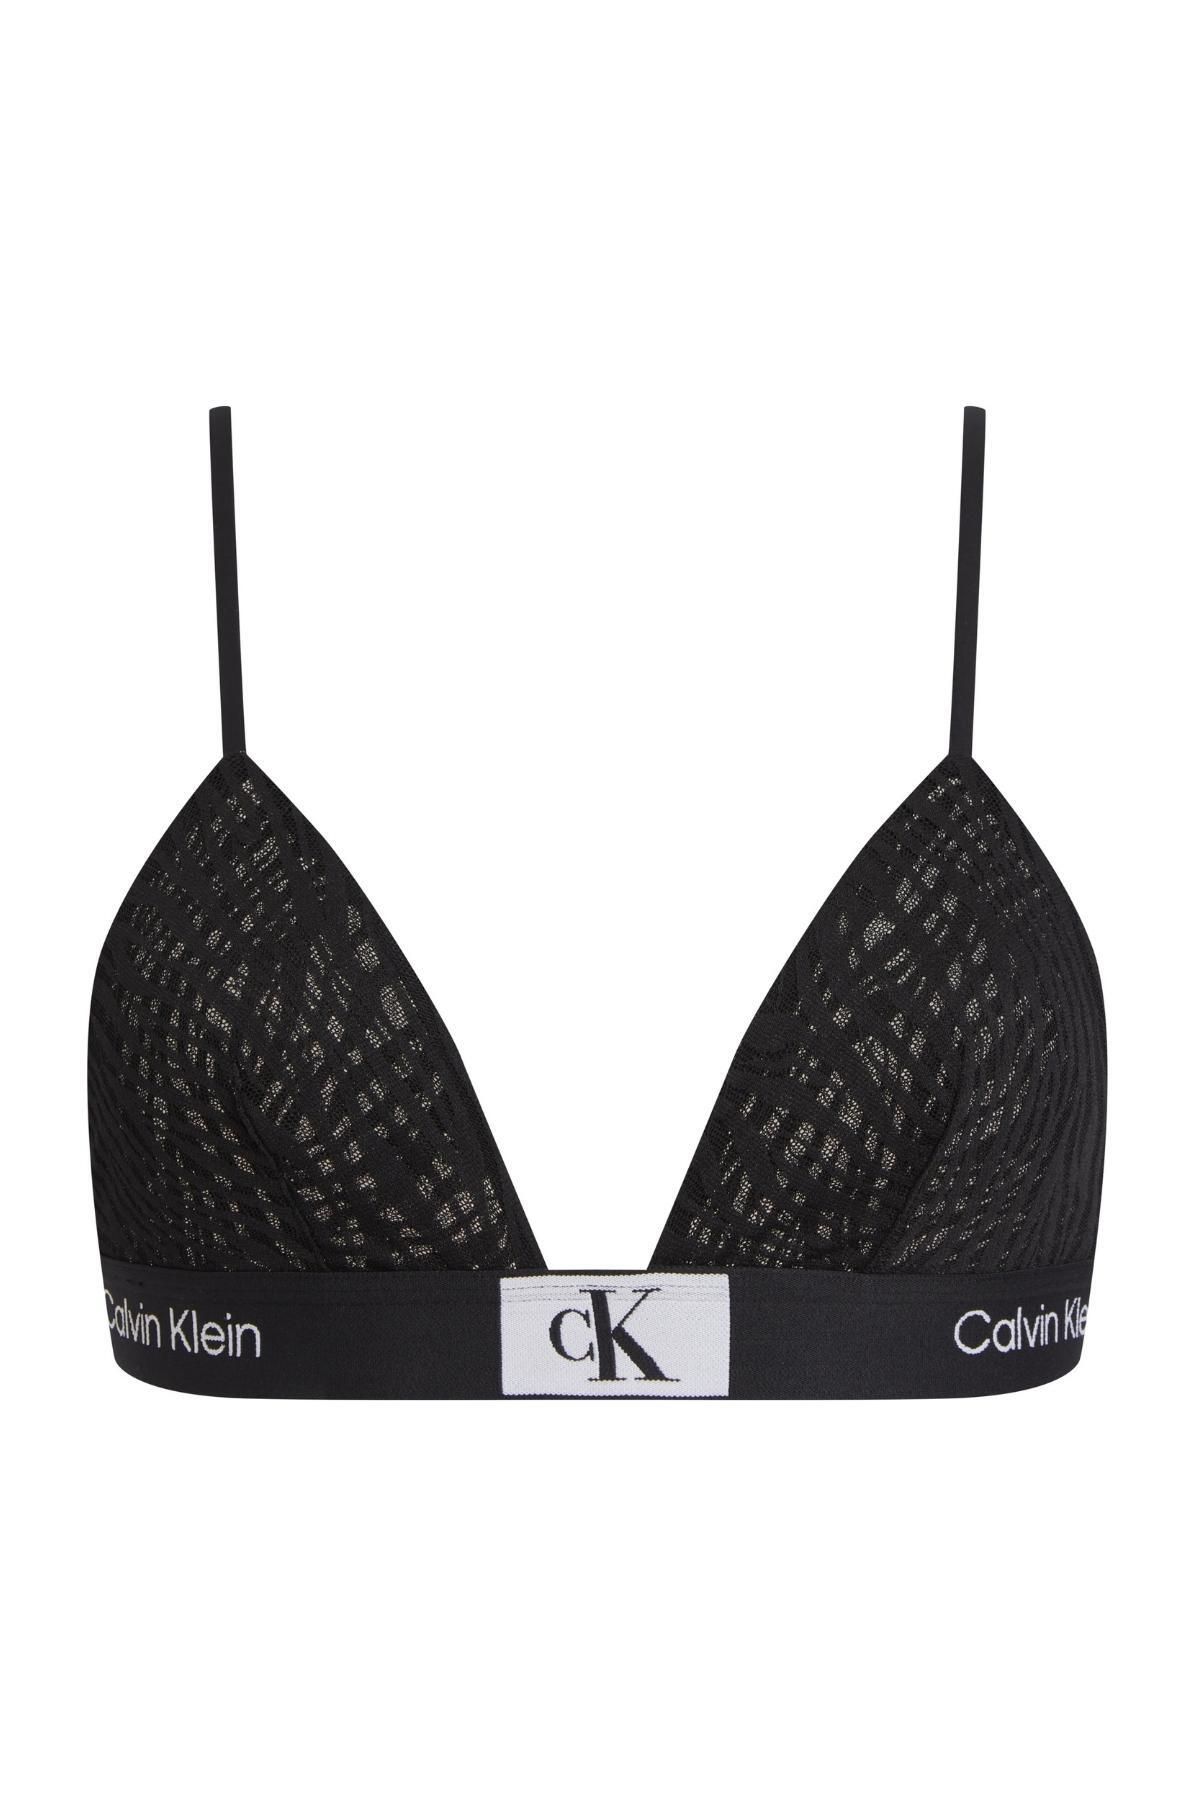 Calvin Klein Kadın Marka Logolu Elastik Bel Bantlı Siyah Spor Sütyeni 000qf7377e-ub1